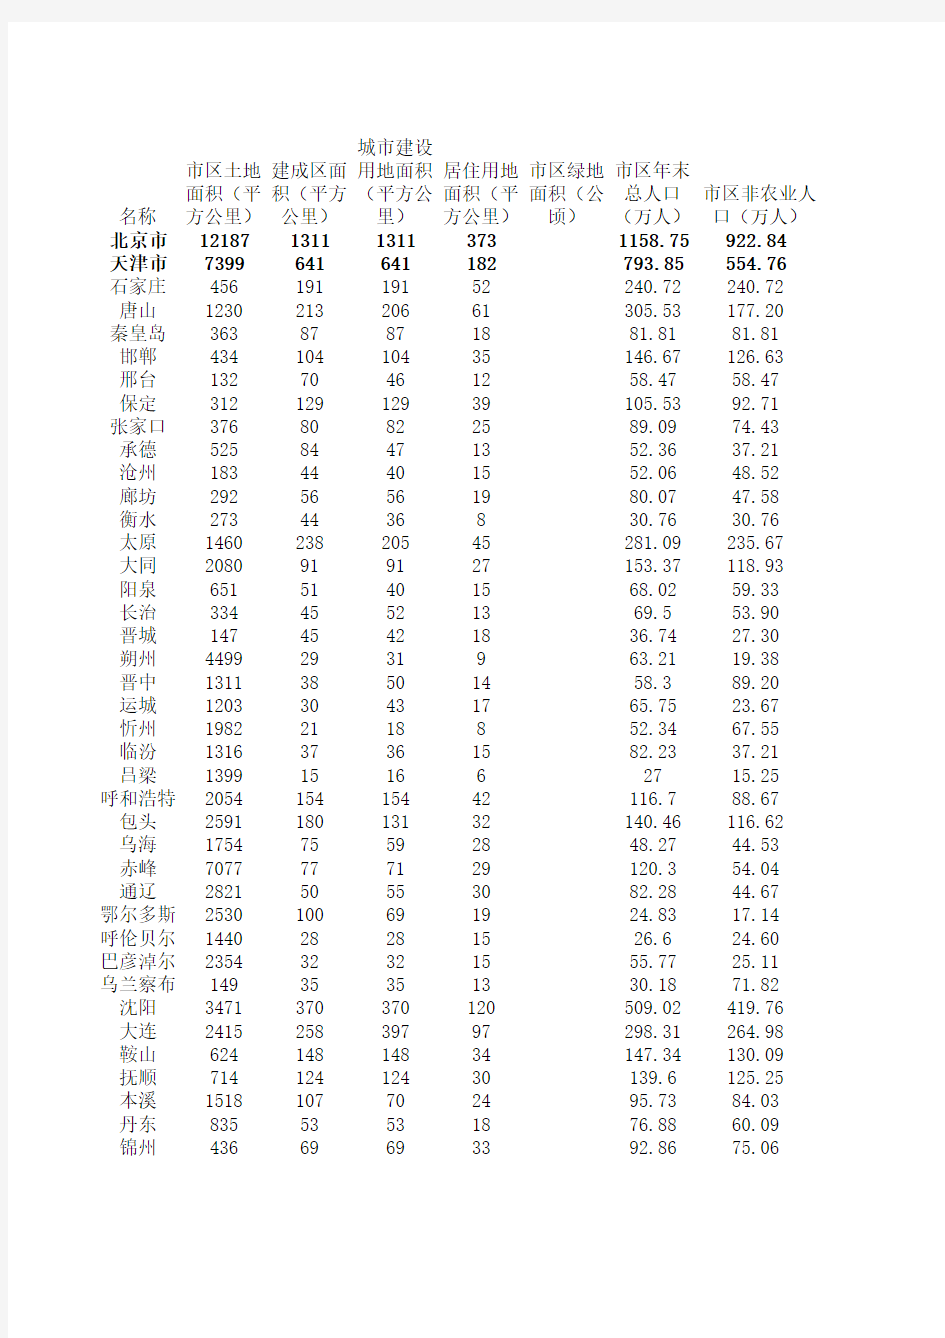 城市统计年鉴所含指标(1997-2012)